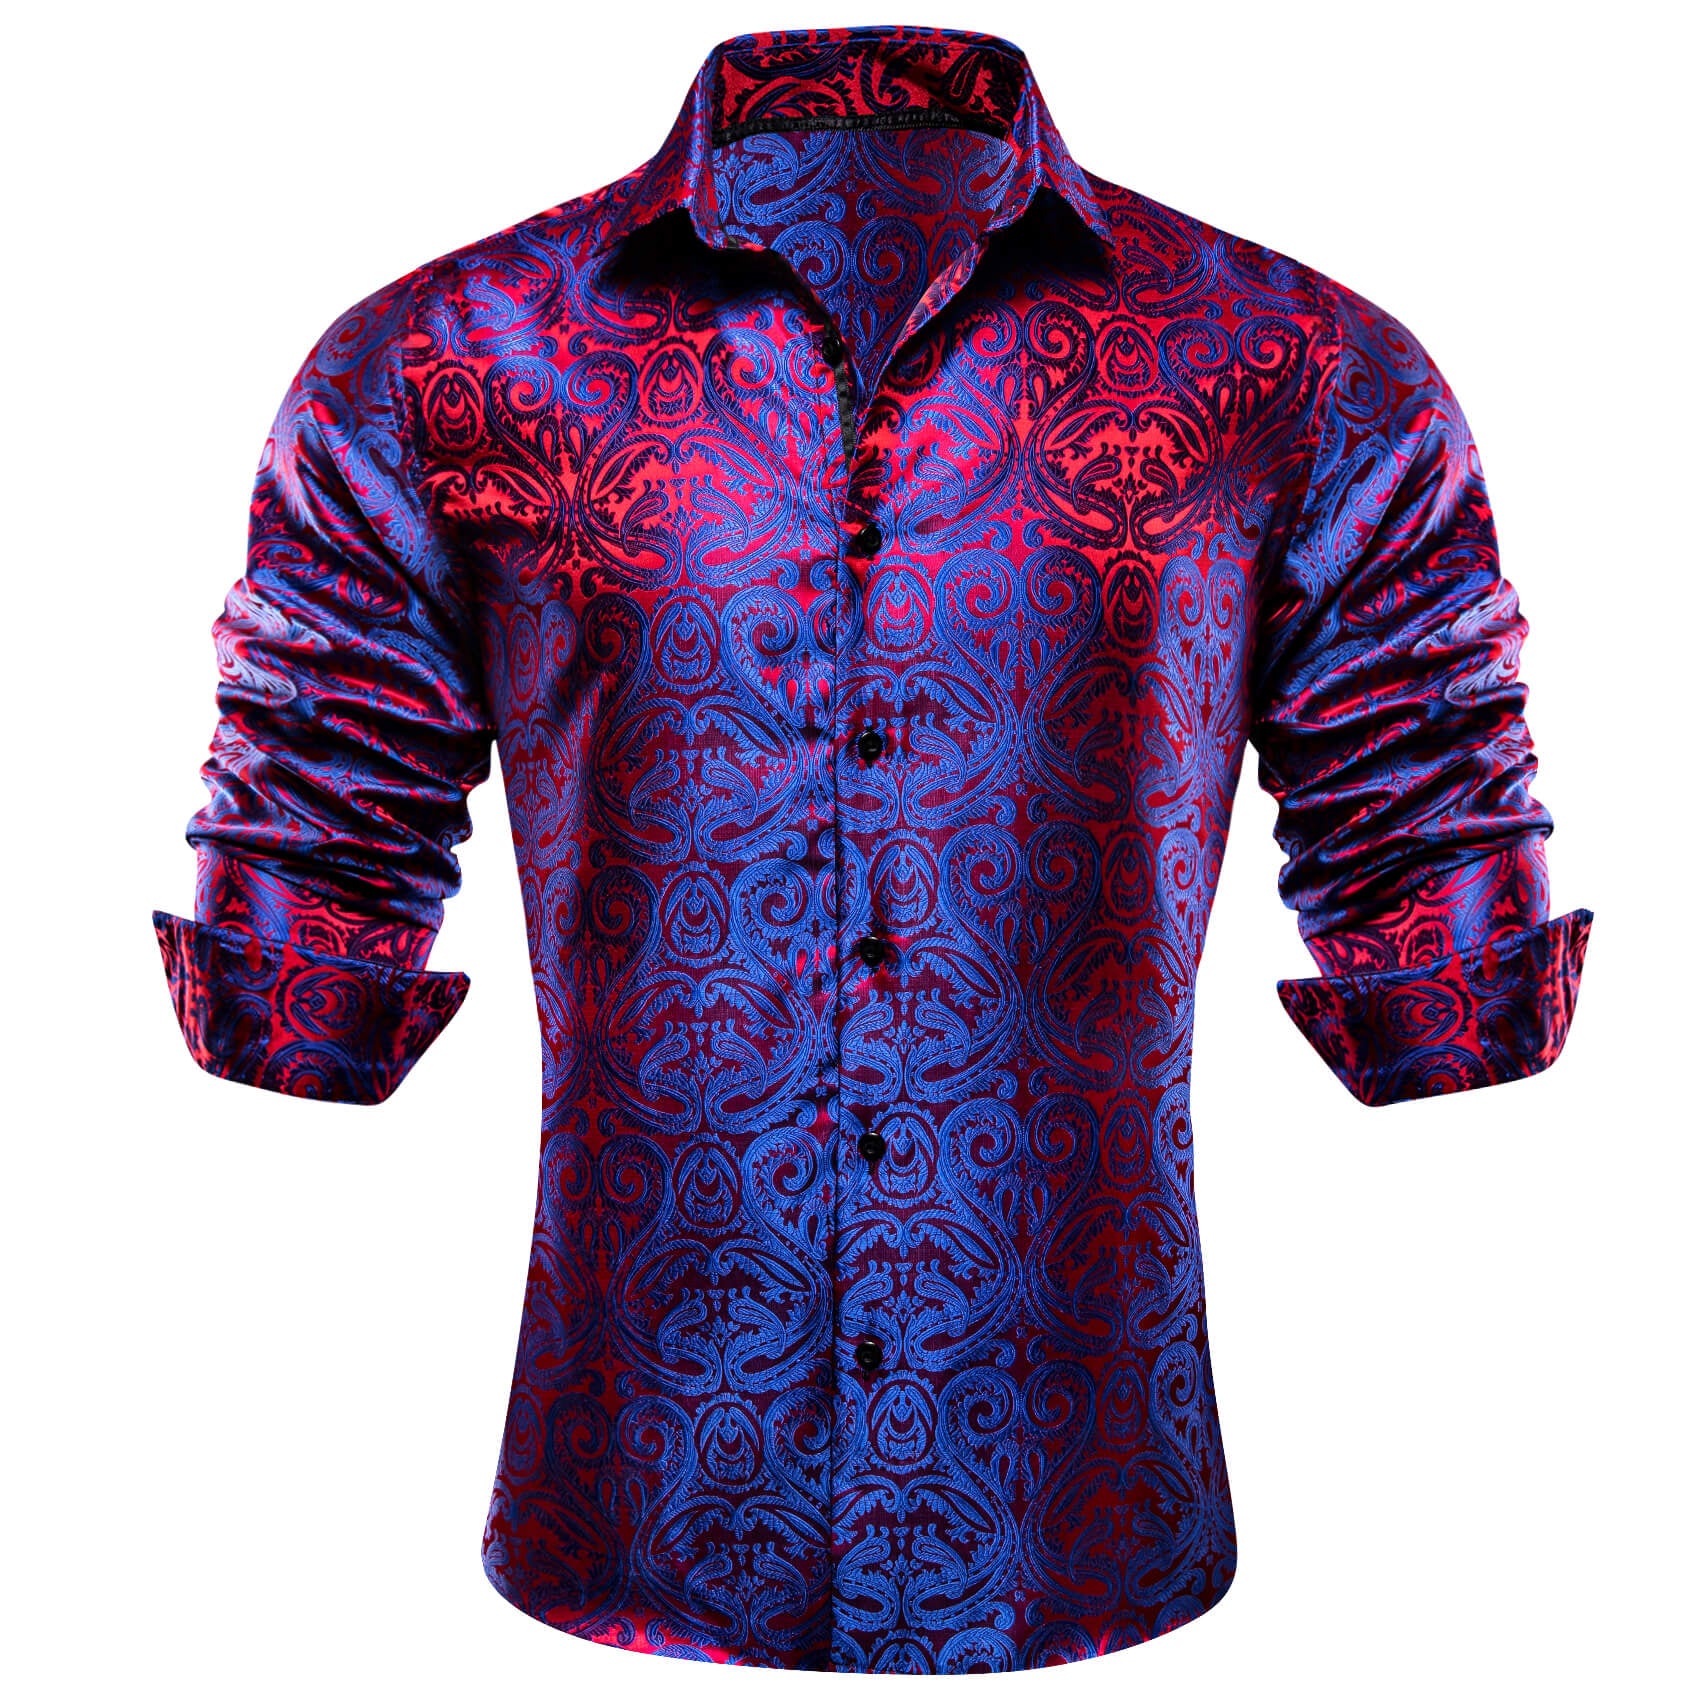 Barry.wang Men's Shirt Blue Red Paisley Silk Long Sleeve Shirt